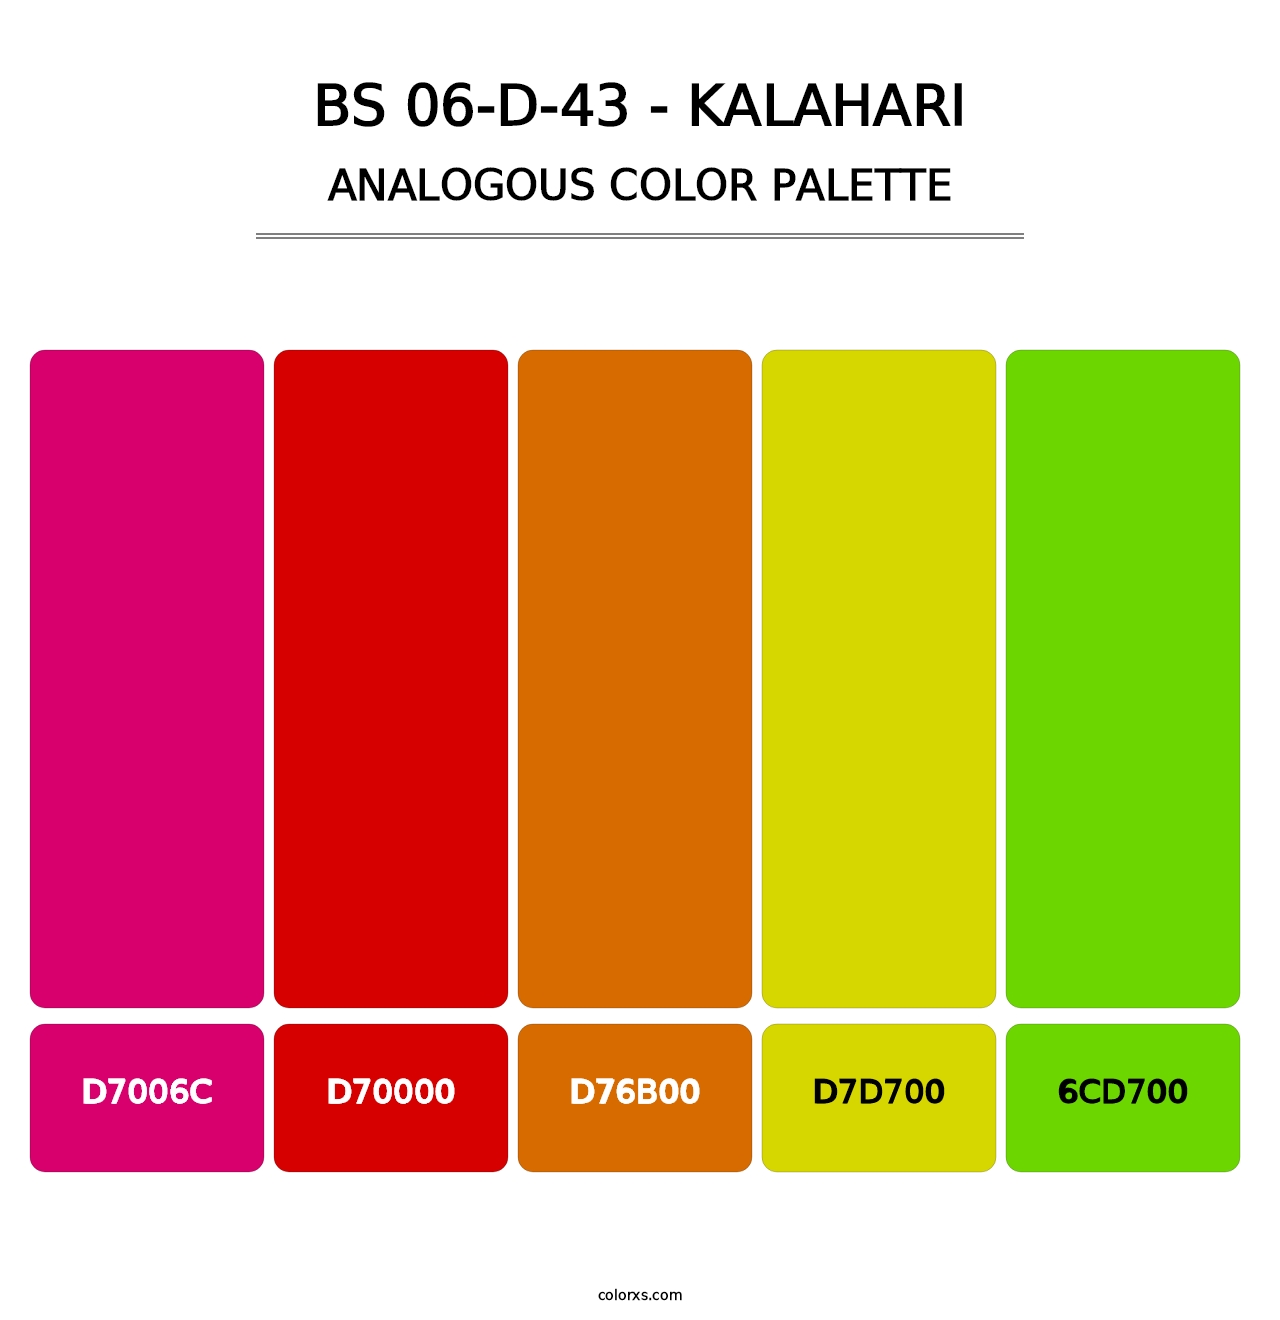 BS 06-D-43 - Kalahari - Analogous Color Palette